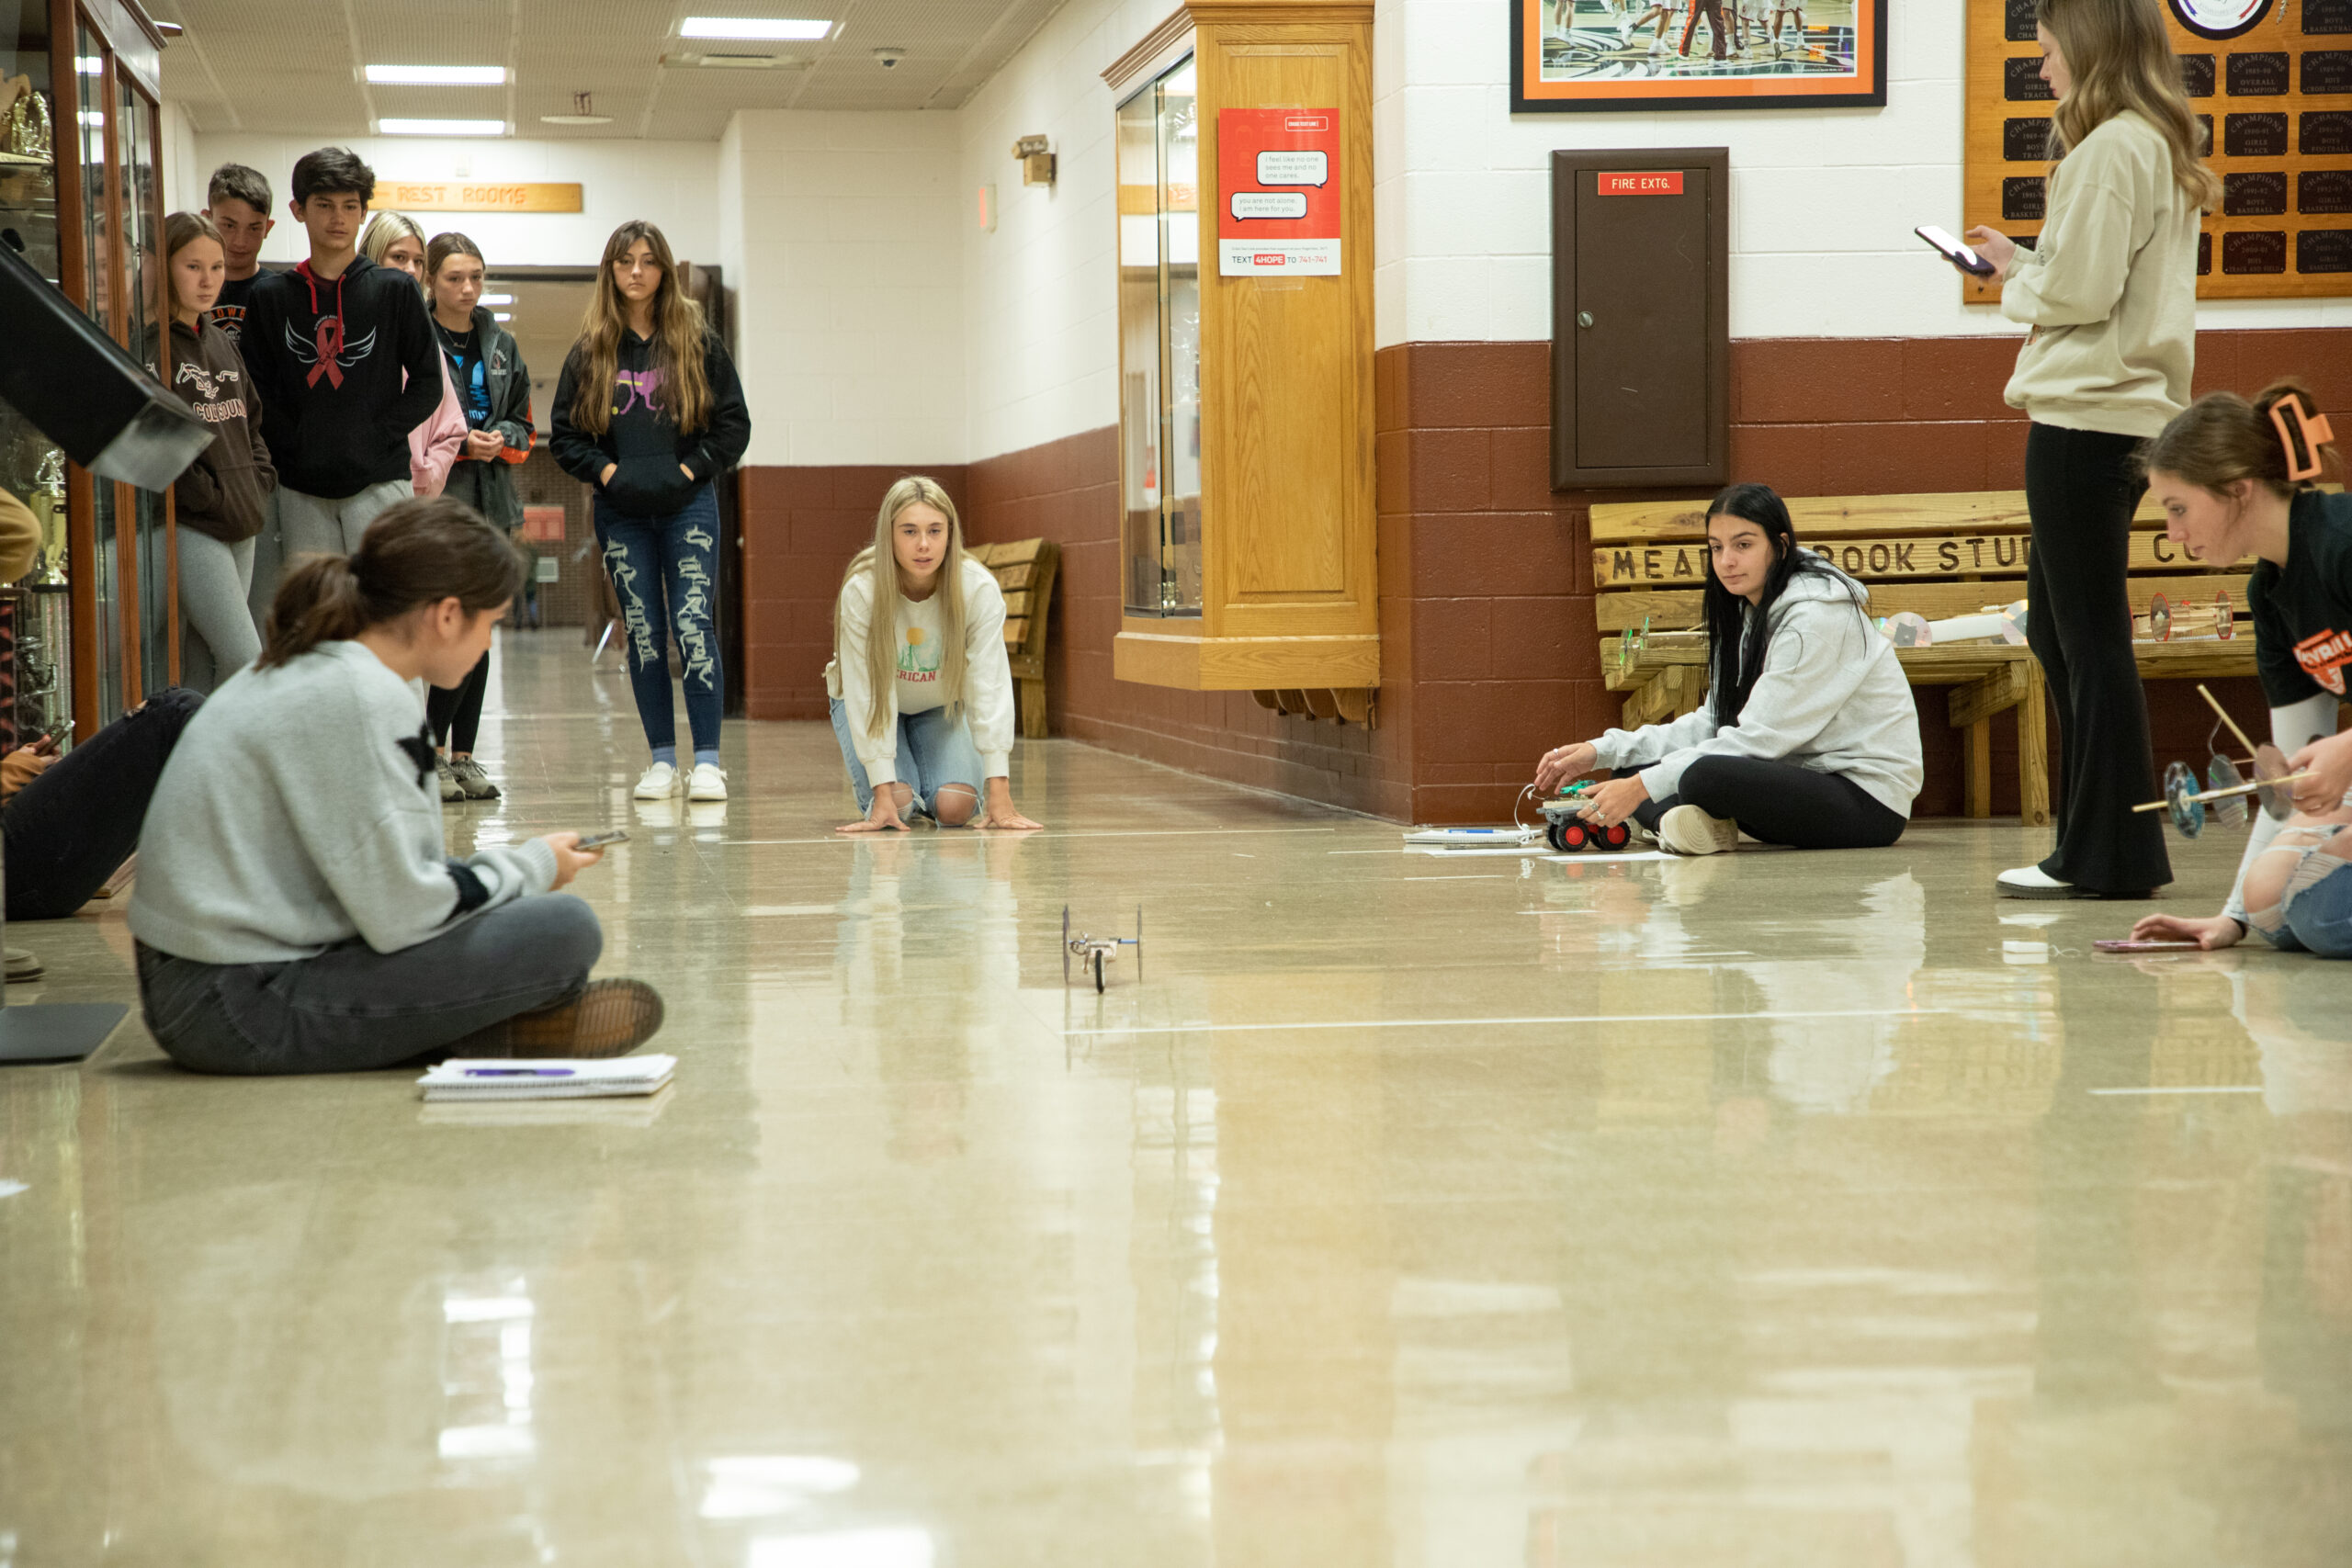 Kids using iPads on the floor of the school hallway